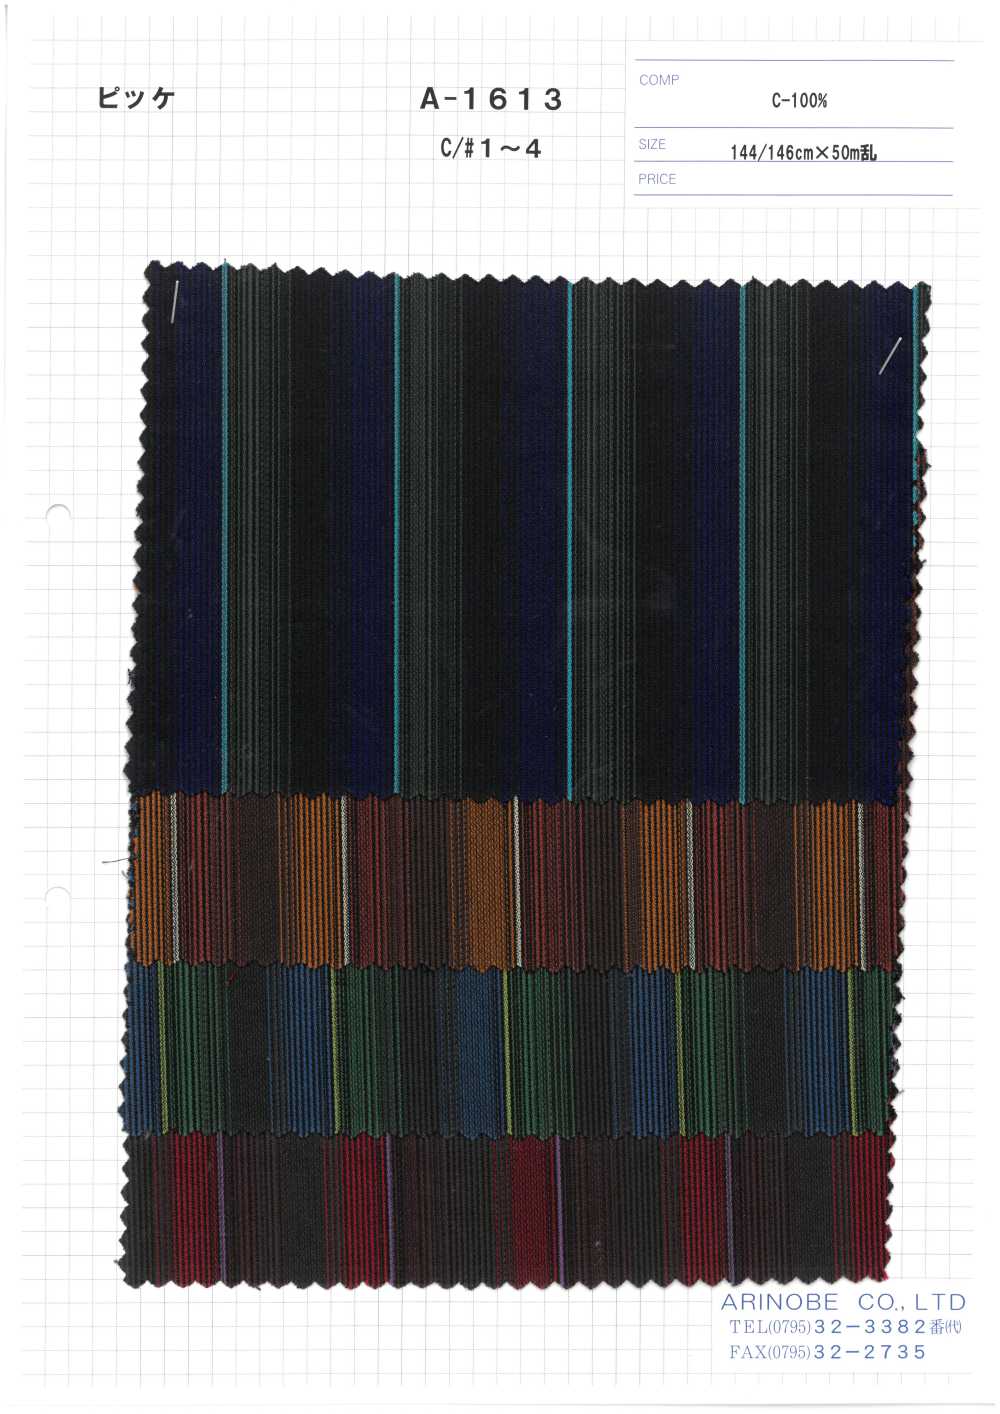 A-1613 Coton Piqué[Fabrication De Textile] ARINOBE CO., LTD.